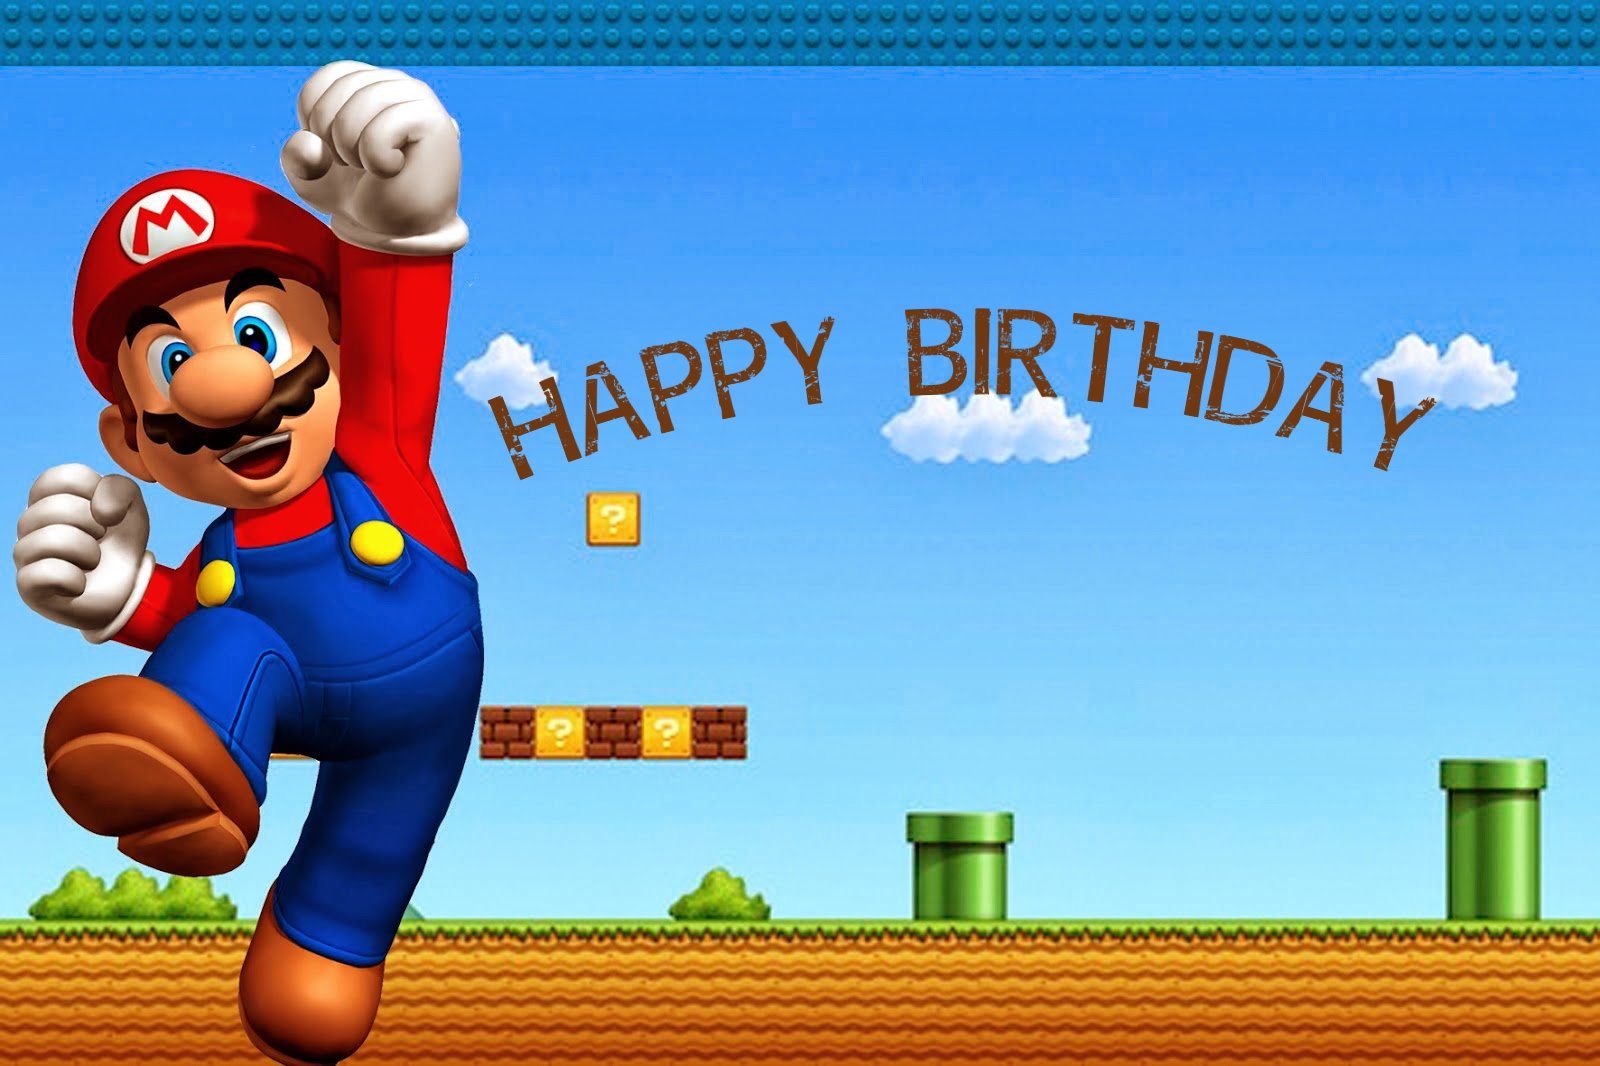 Mario and Luigi birthday cards